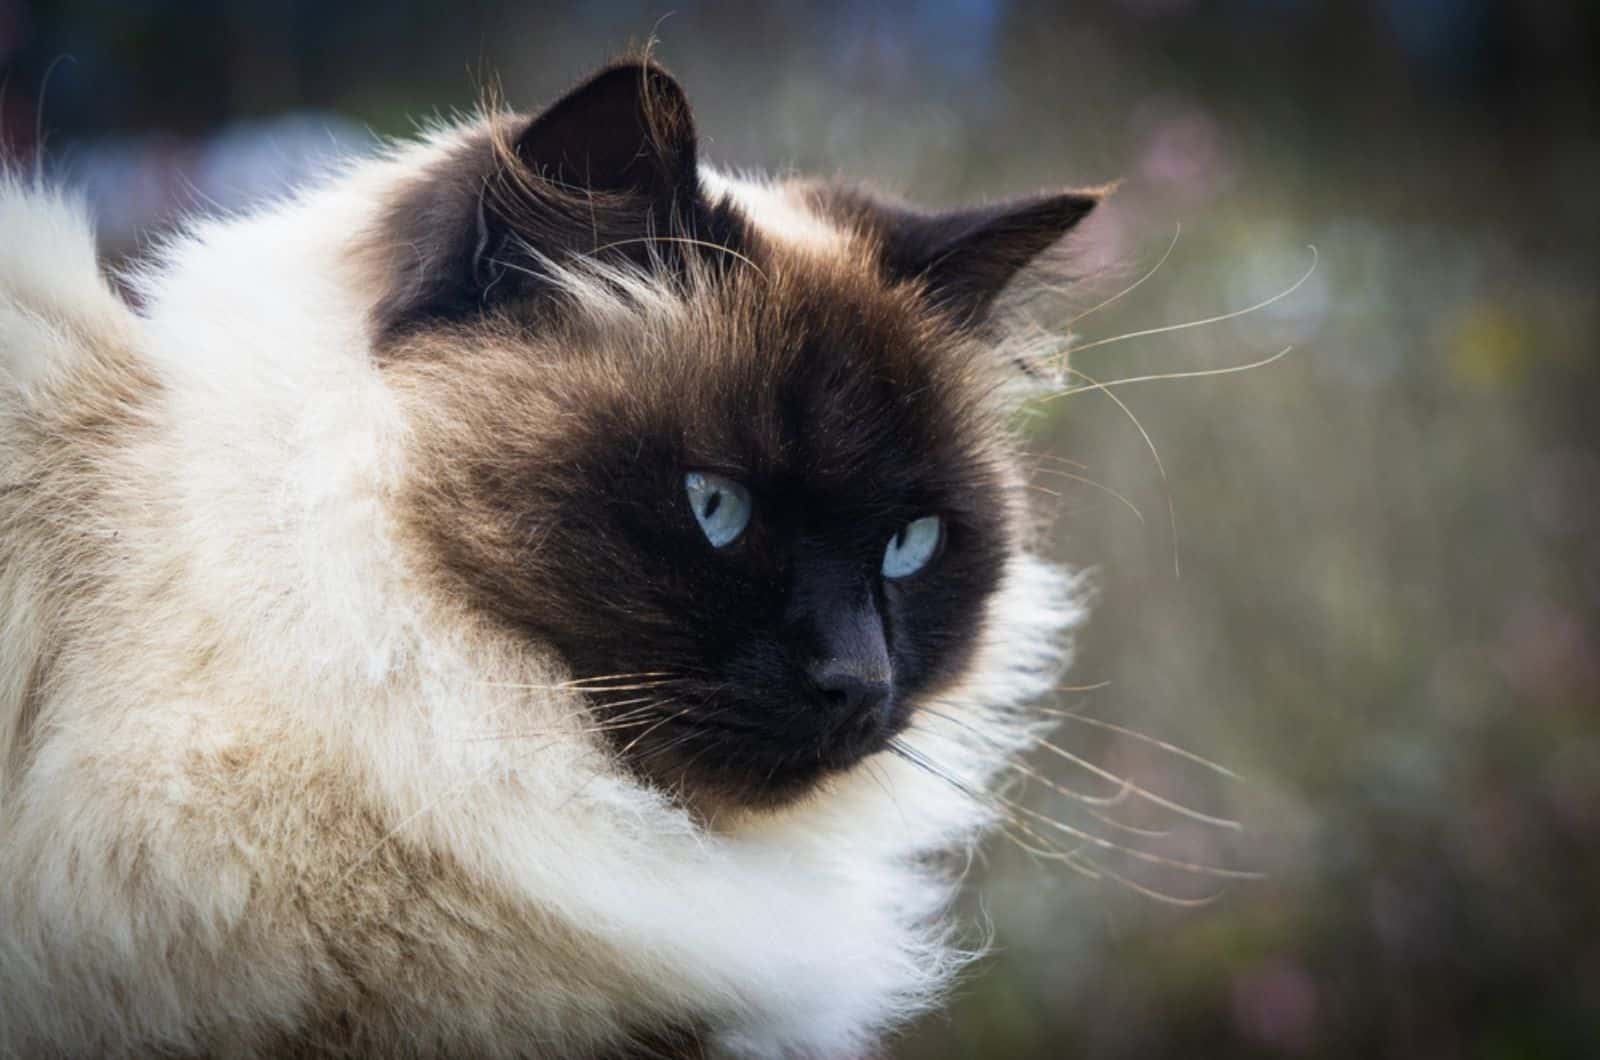 Beautiful Persian Himalayan cat in Siamese color